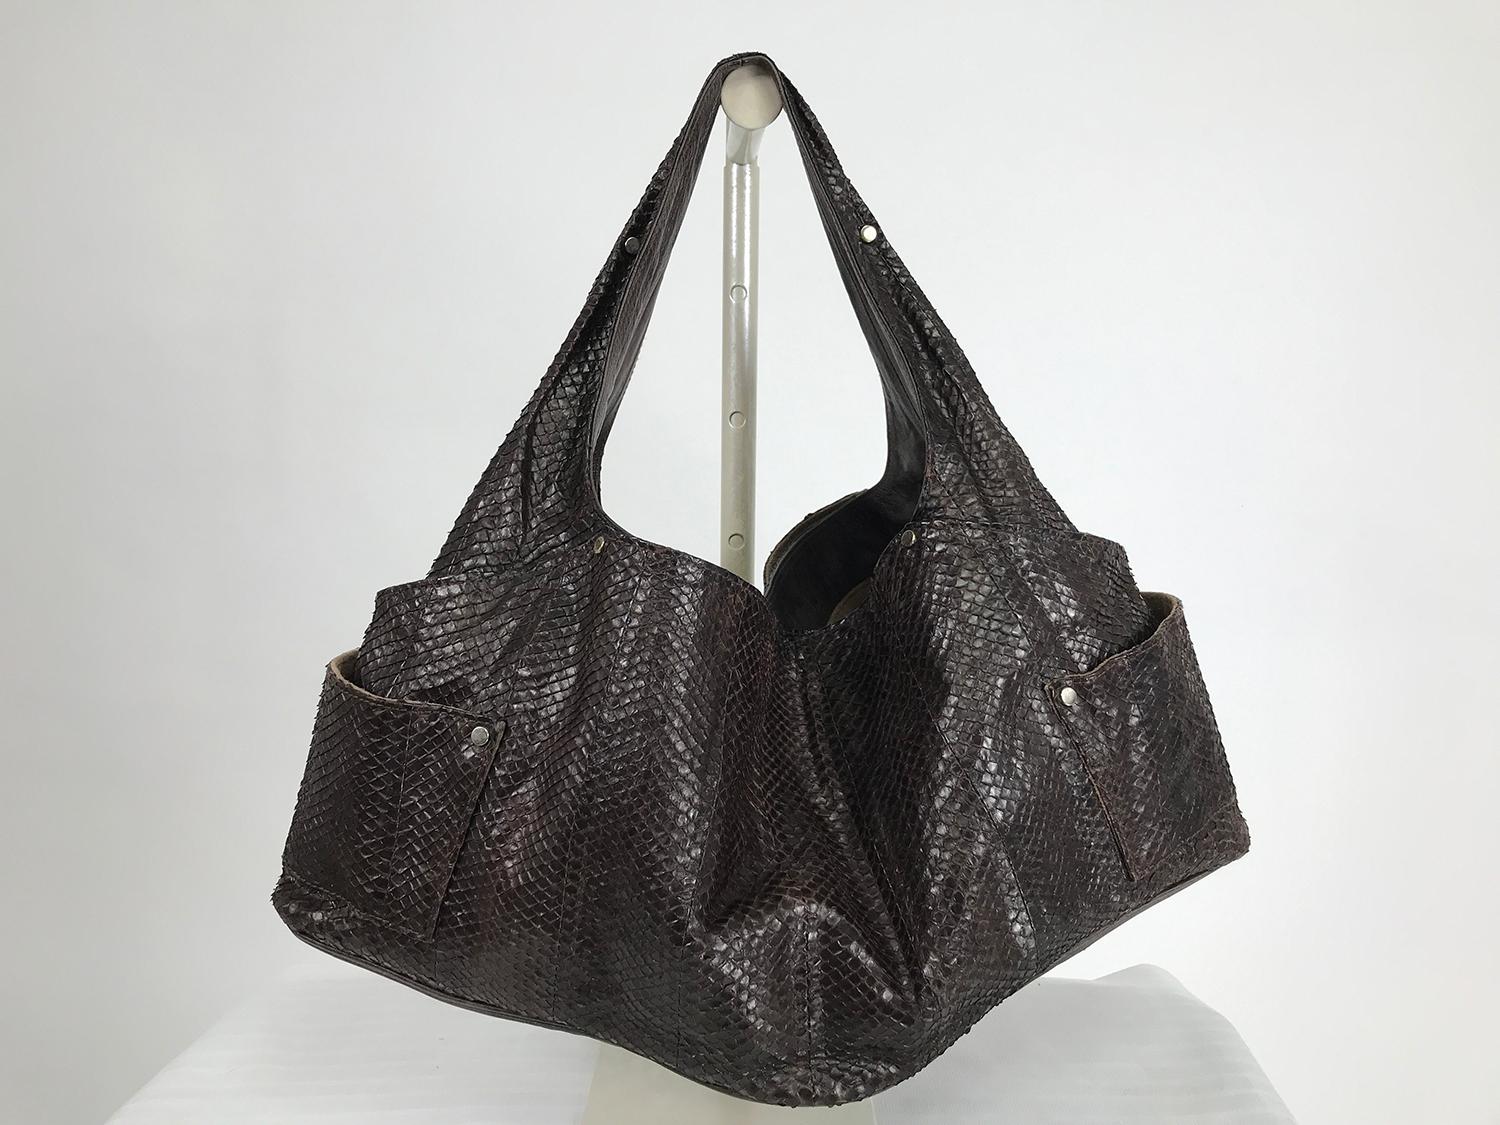 R&Y Augousti Paris, grand sac à bandoulière en peau de serpent marron avec des clous argentés. Le sac en peau souple est doté d'une bandoulière doublée de cuir qui est intégrée au design du sac. Le sac est grand avec des compartiments extérieurs sur